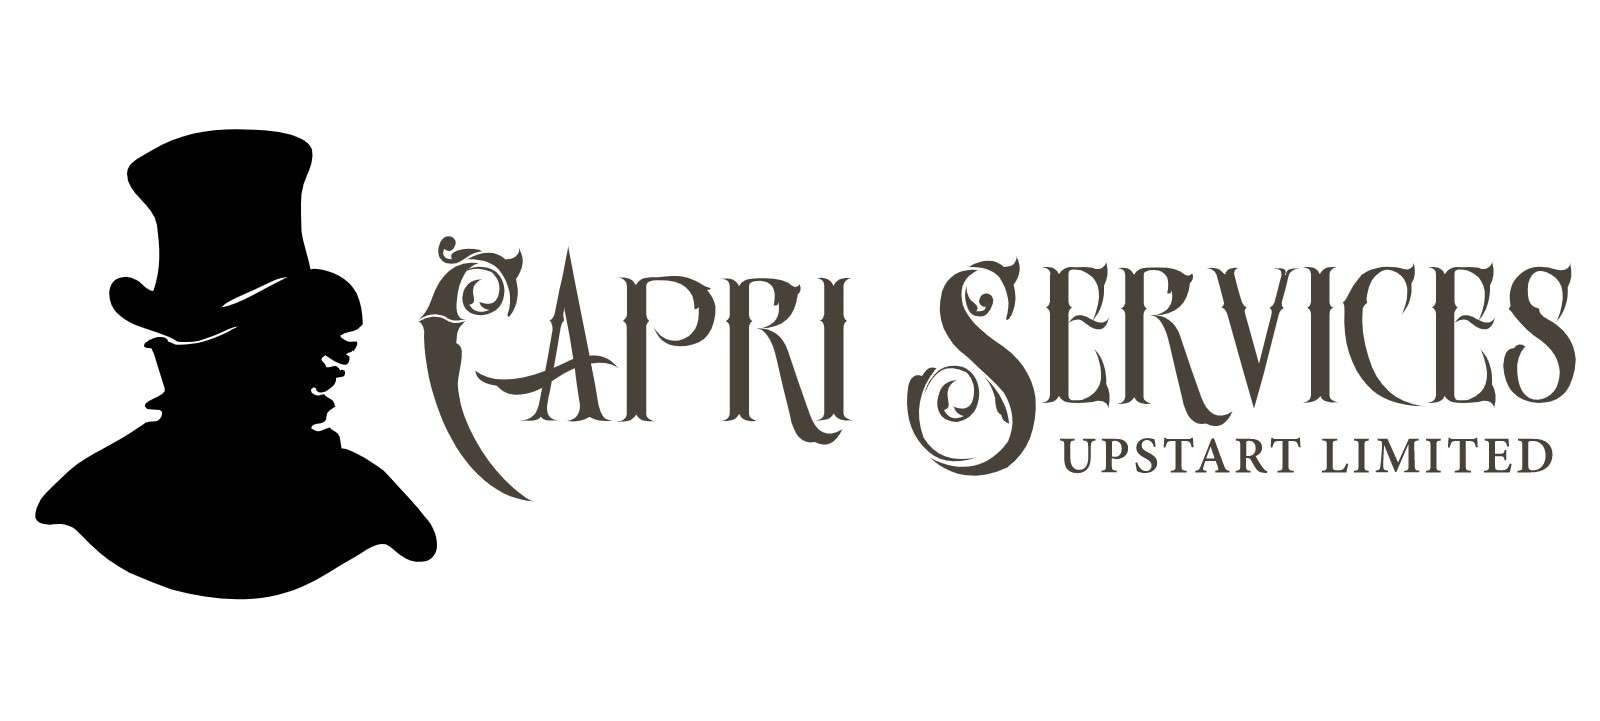 Capri Services Upstart Ltd Logo